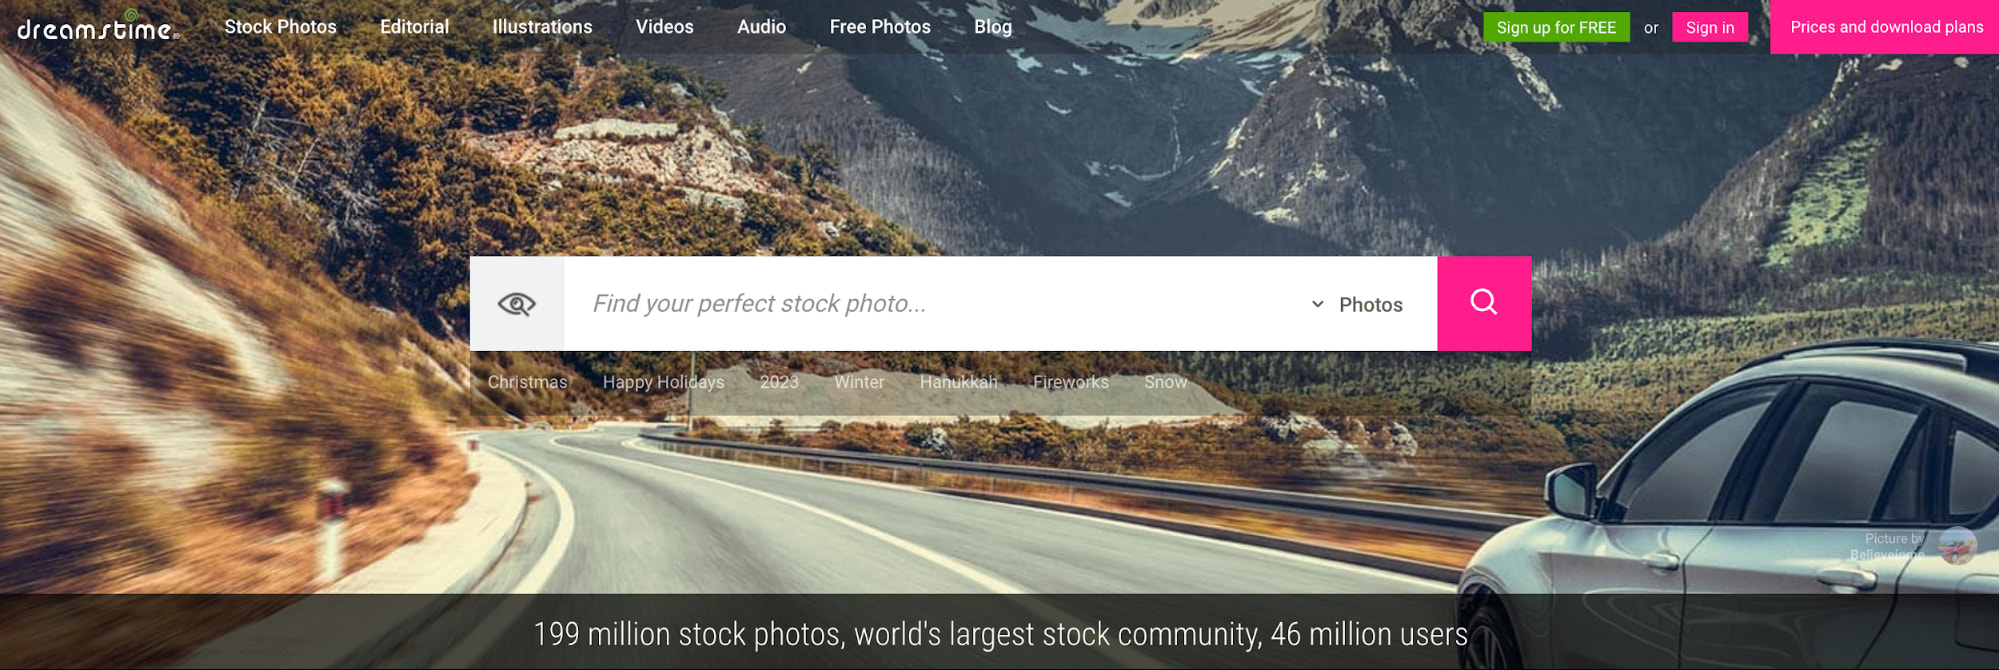 Fb login screenshot hi-res stock photography and images - Alamy